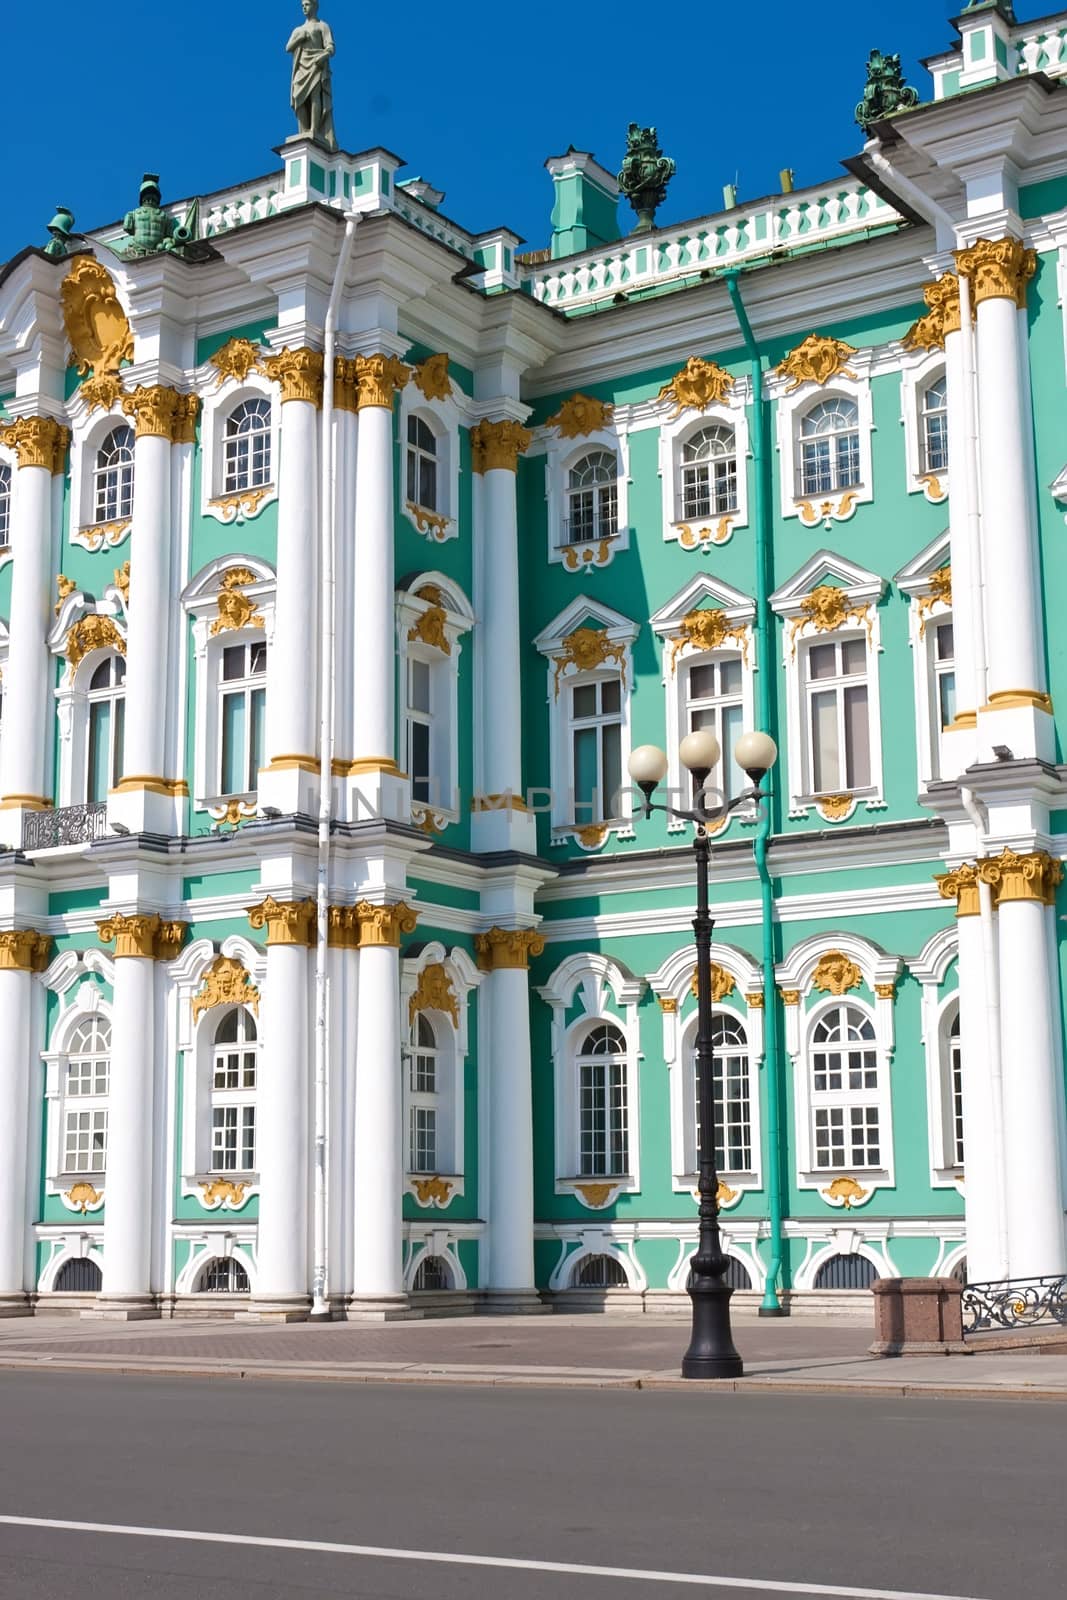 Hermitage in Saint Petersburg by sailorr